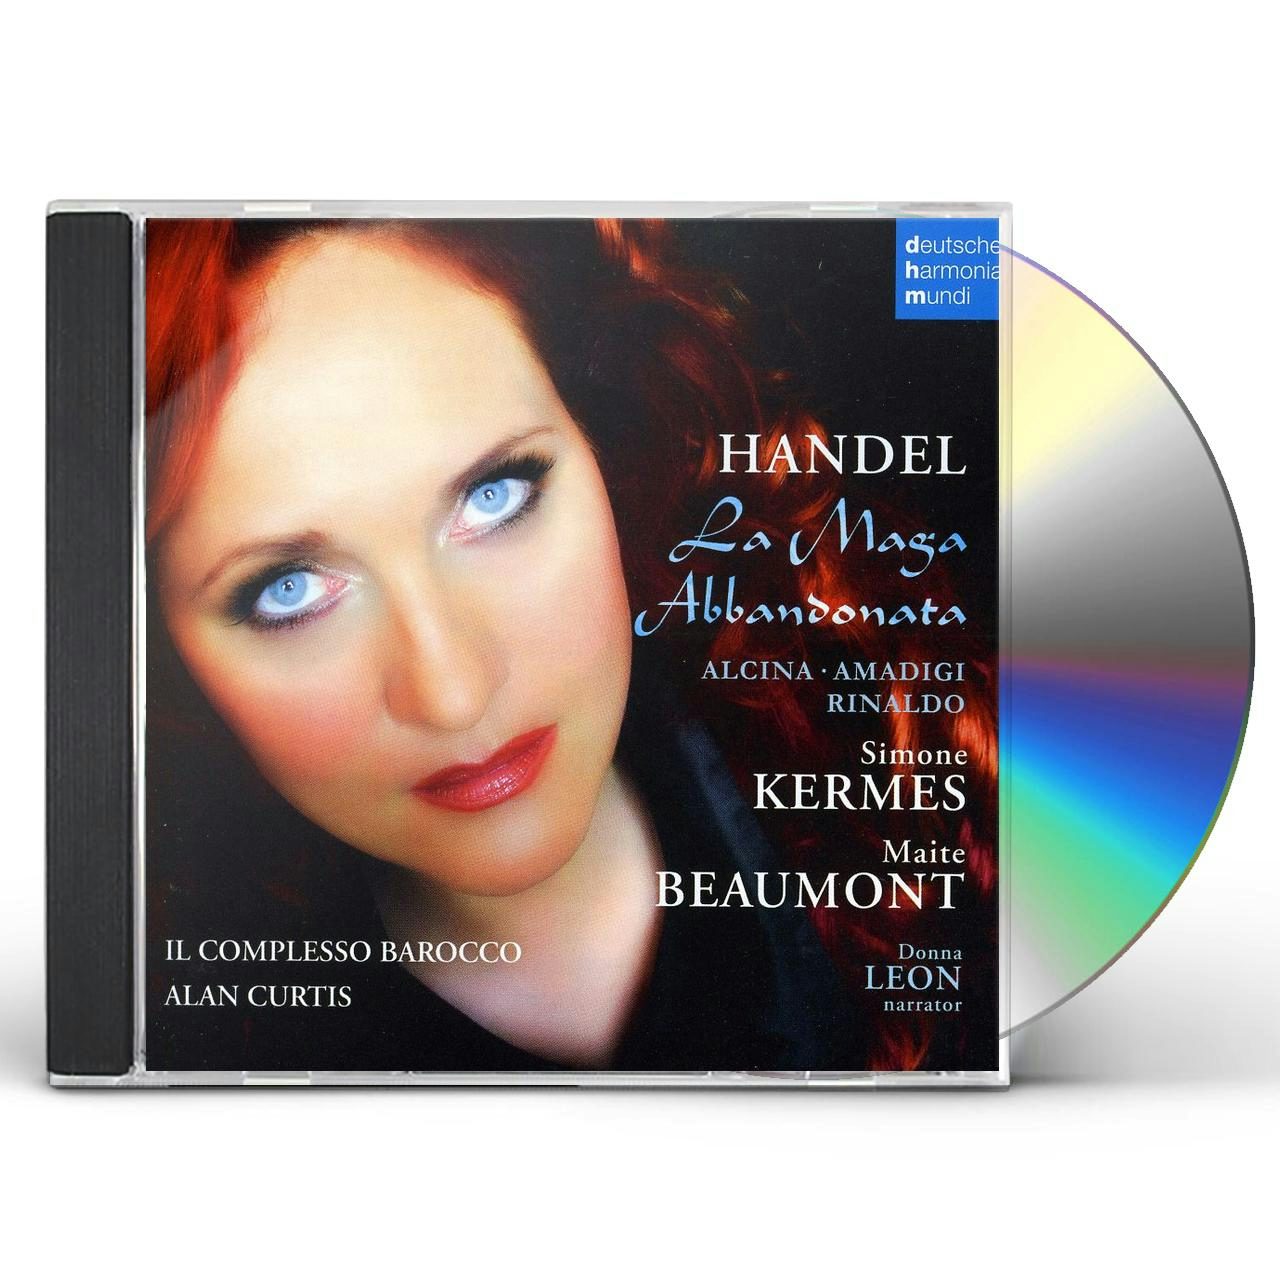 Simone Kermes LA MAGA ABBANDONATA: FAMOUS HANDEL ARIA CD $35.99$32.49